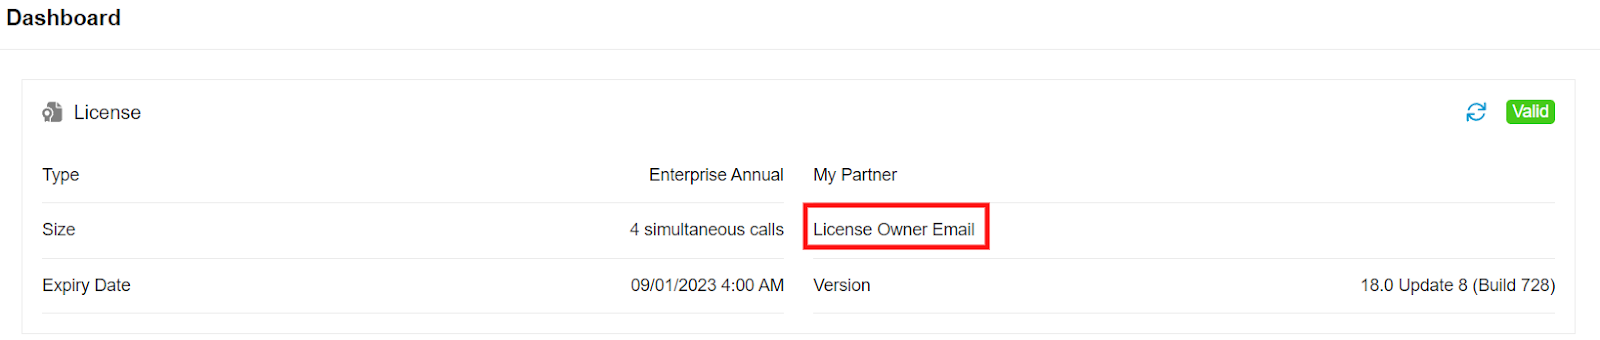 Узнать текущего владельца лицензии можно в веб-клиенте в разделе <b>“Admin > Dashboard”</b>. Здесь виден e-mail адрес владельца лицензии (License Owner)